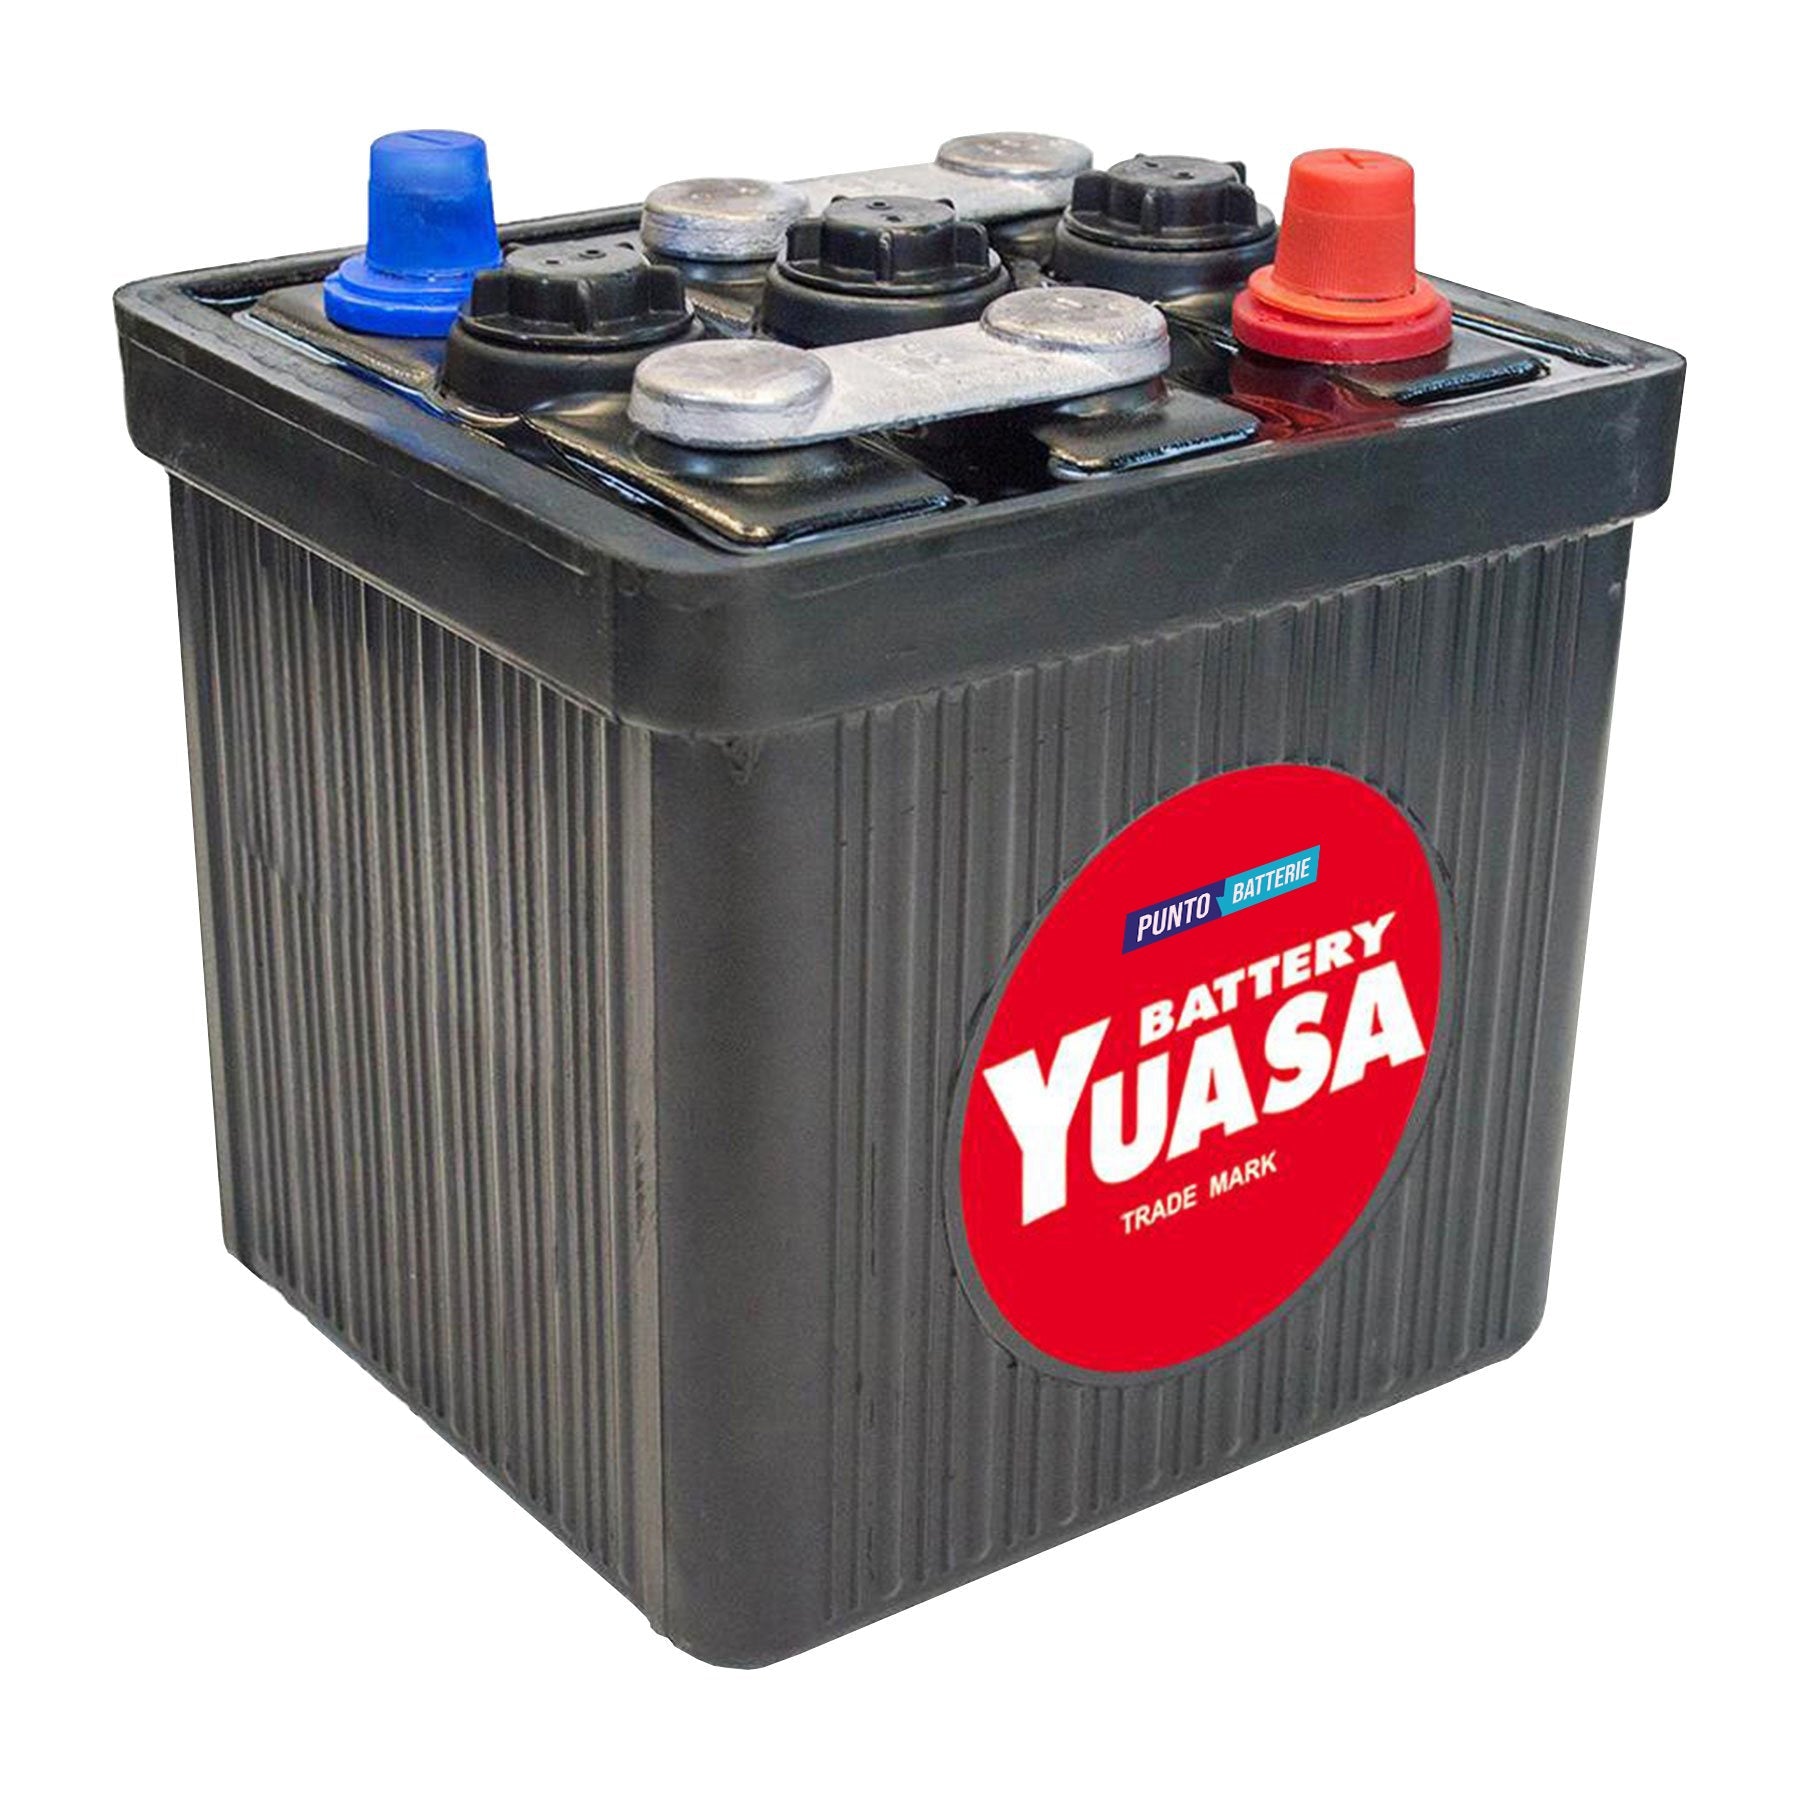 Batteria originale Yuasa Classic e Oldtimer 401, dimensioni 186 x 170 x 189, polo positivo a destra, 6 volt, 60 amperora, 350 ampere. Batteria per veicoli d'epoca.